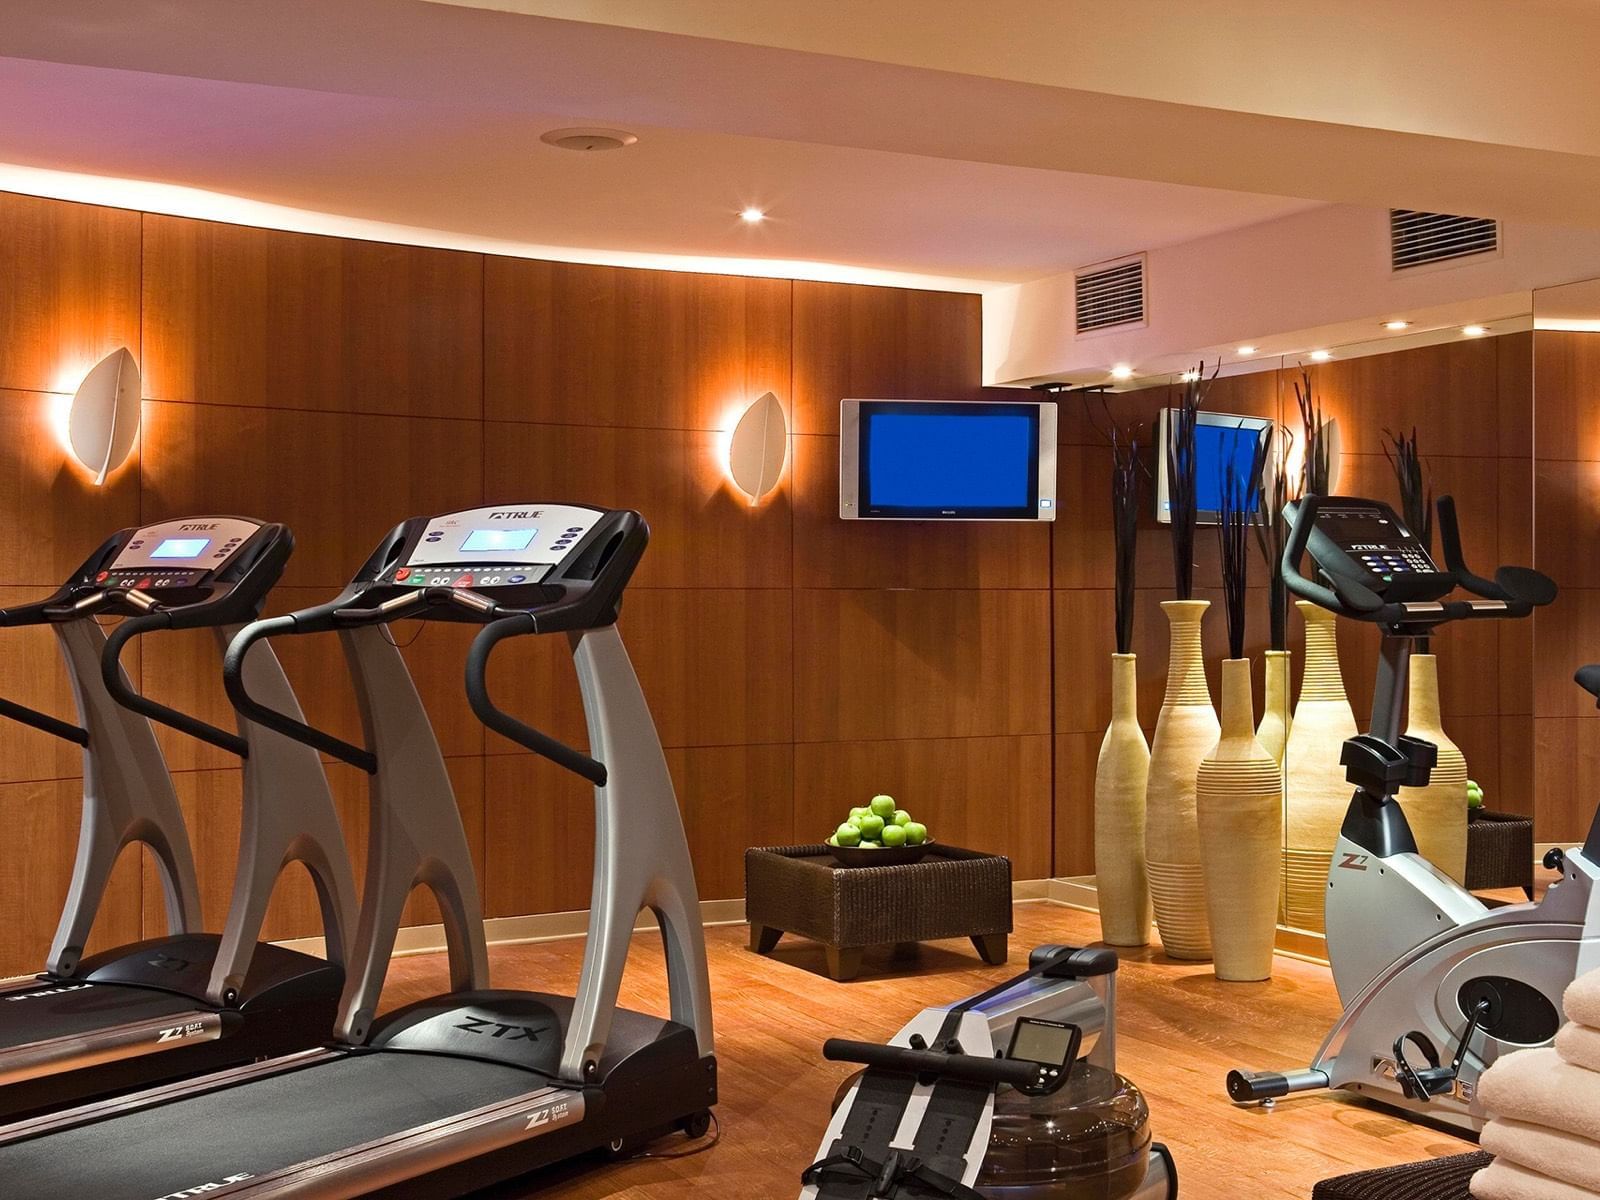 Fitnessruimte in hotel Warwick Brussels 